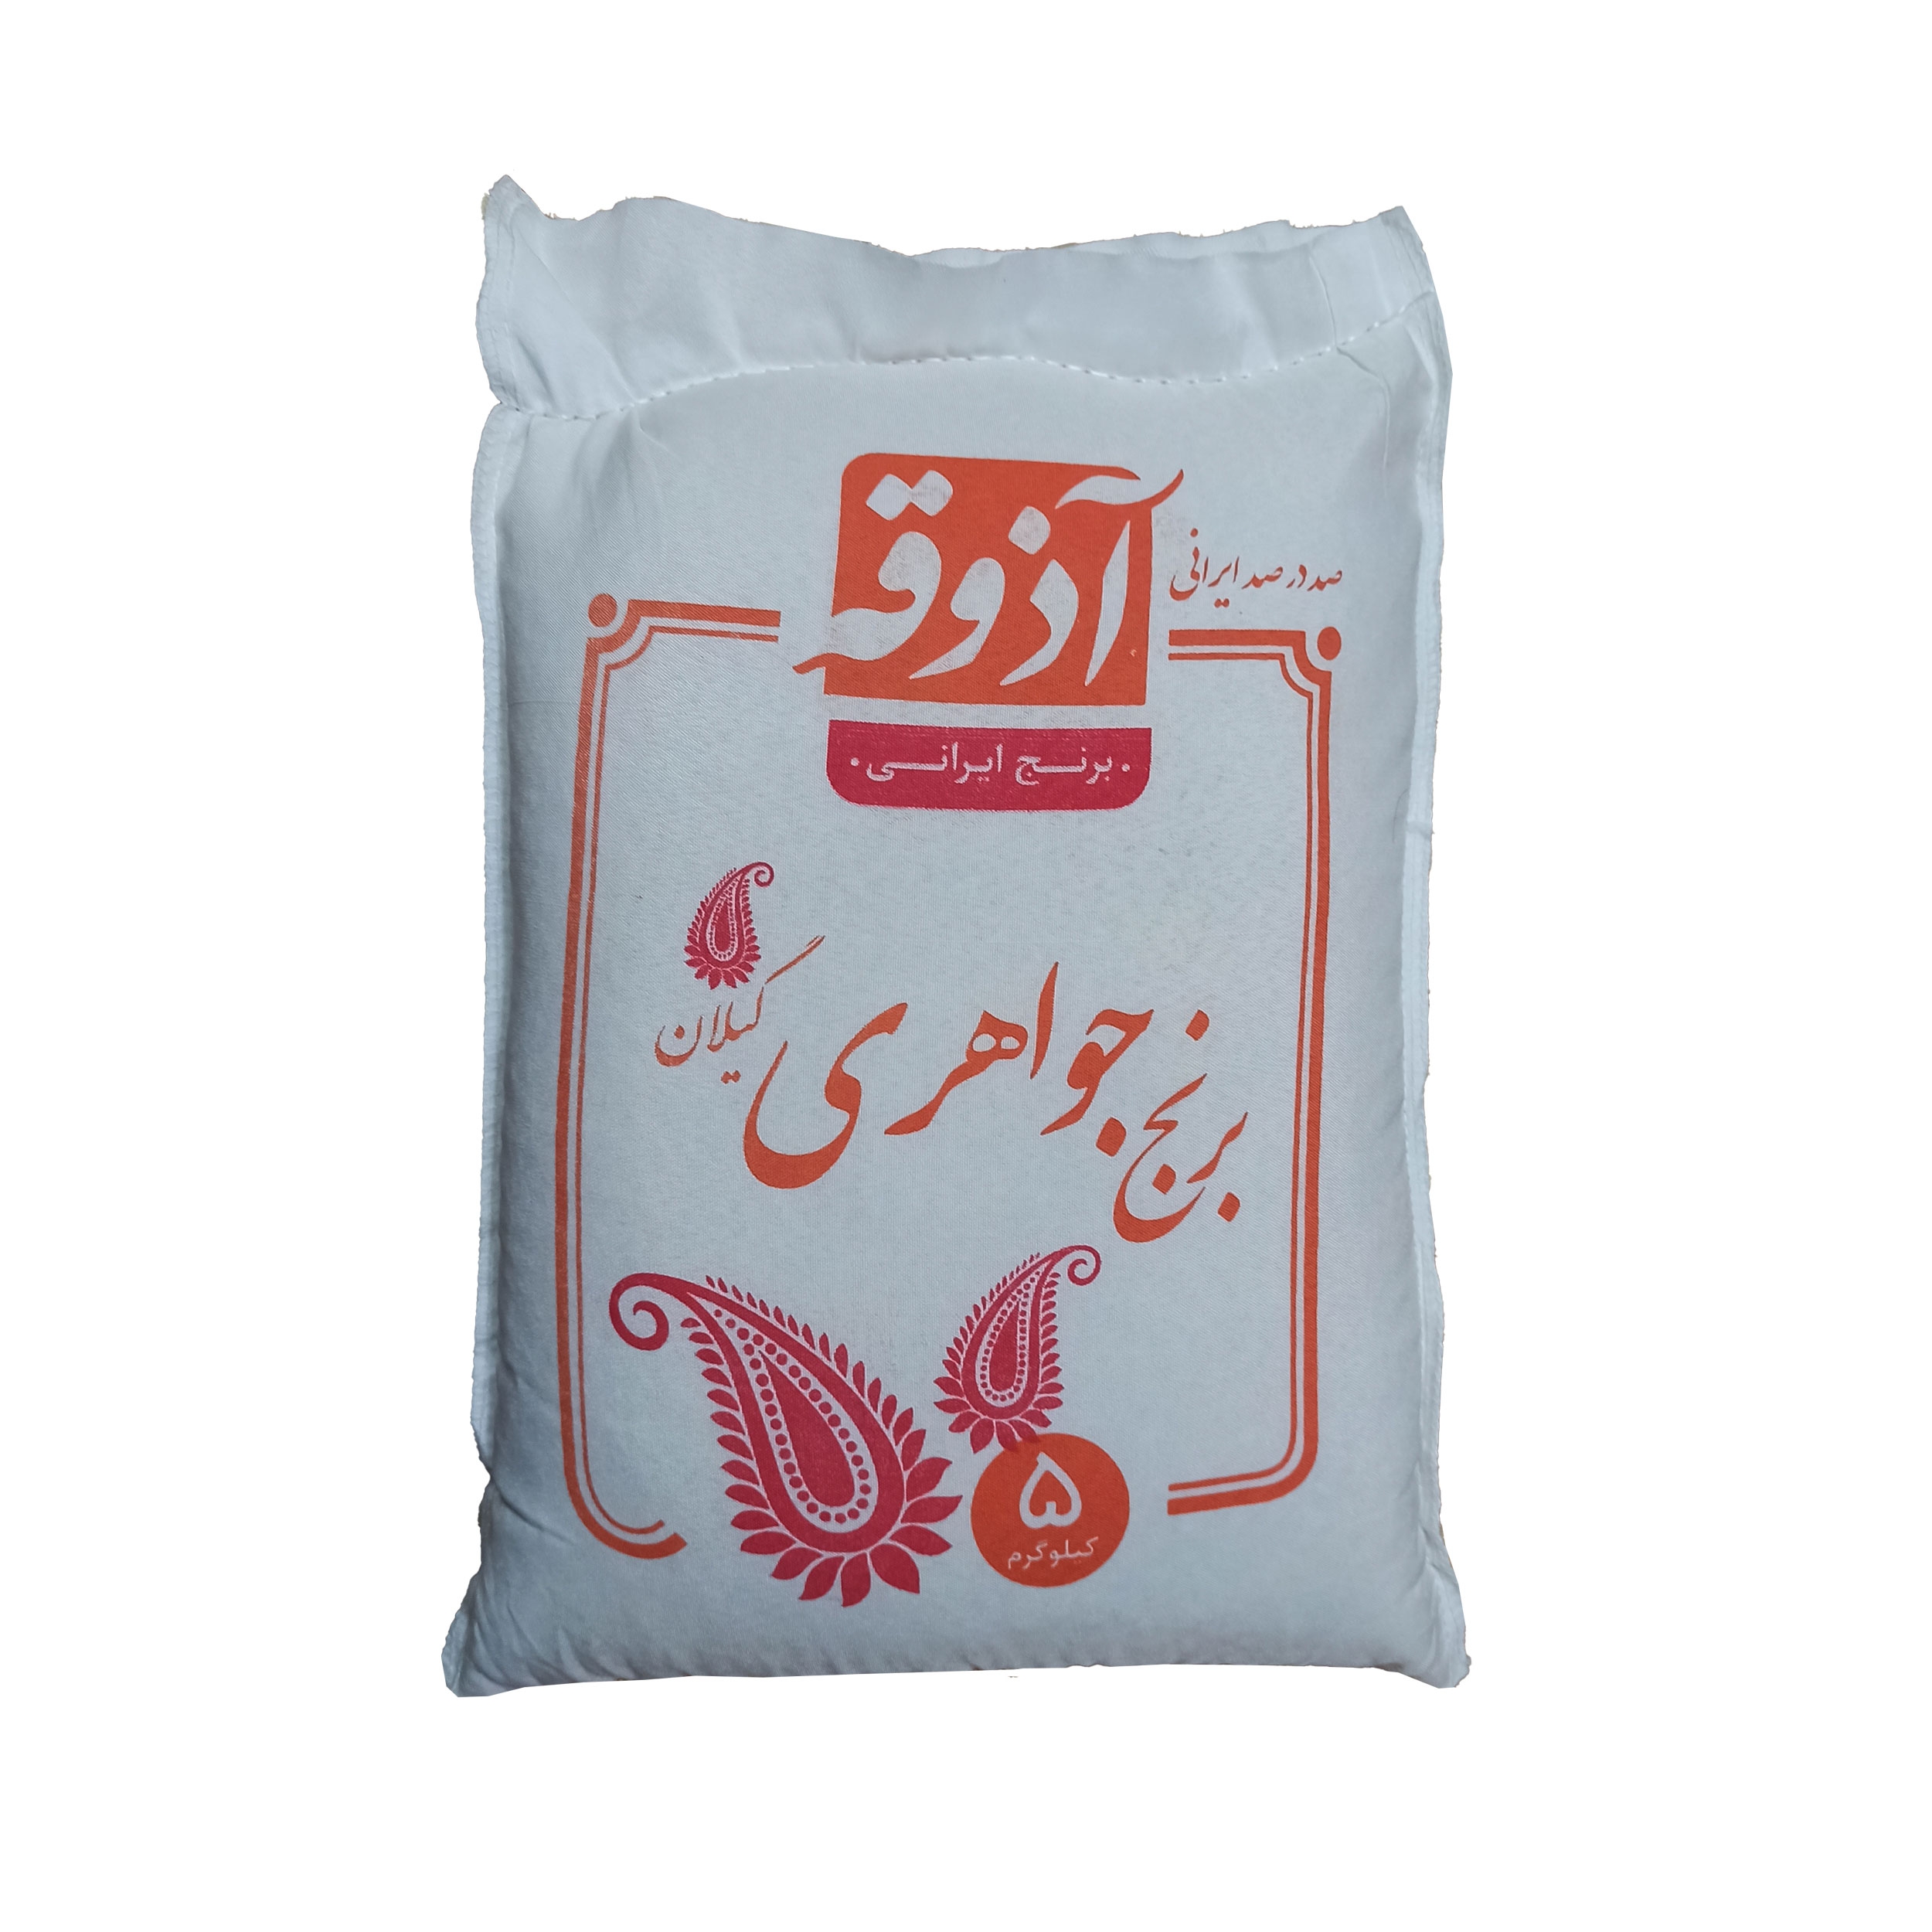 نکته خرید - قیمت روز برنج جواهری گیلان آذوقه - 5 کیلوگرم خرید